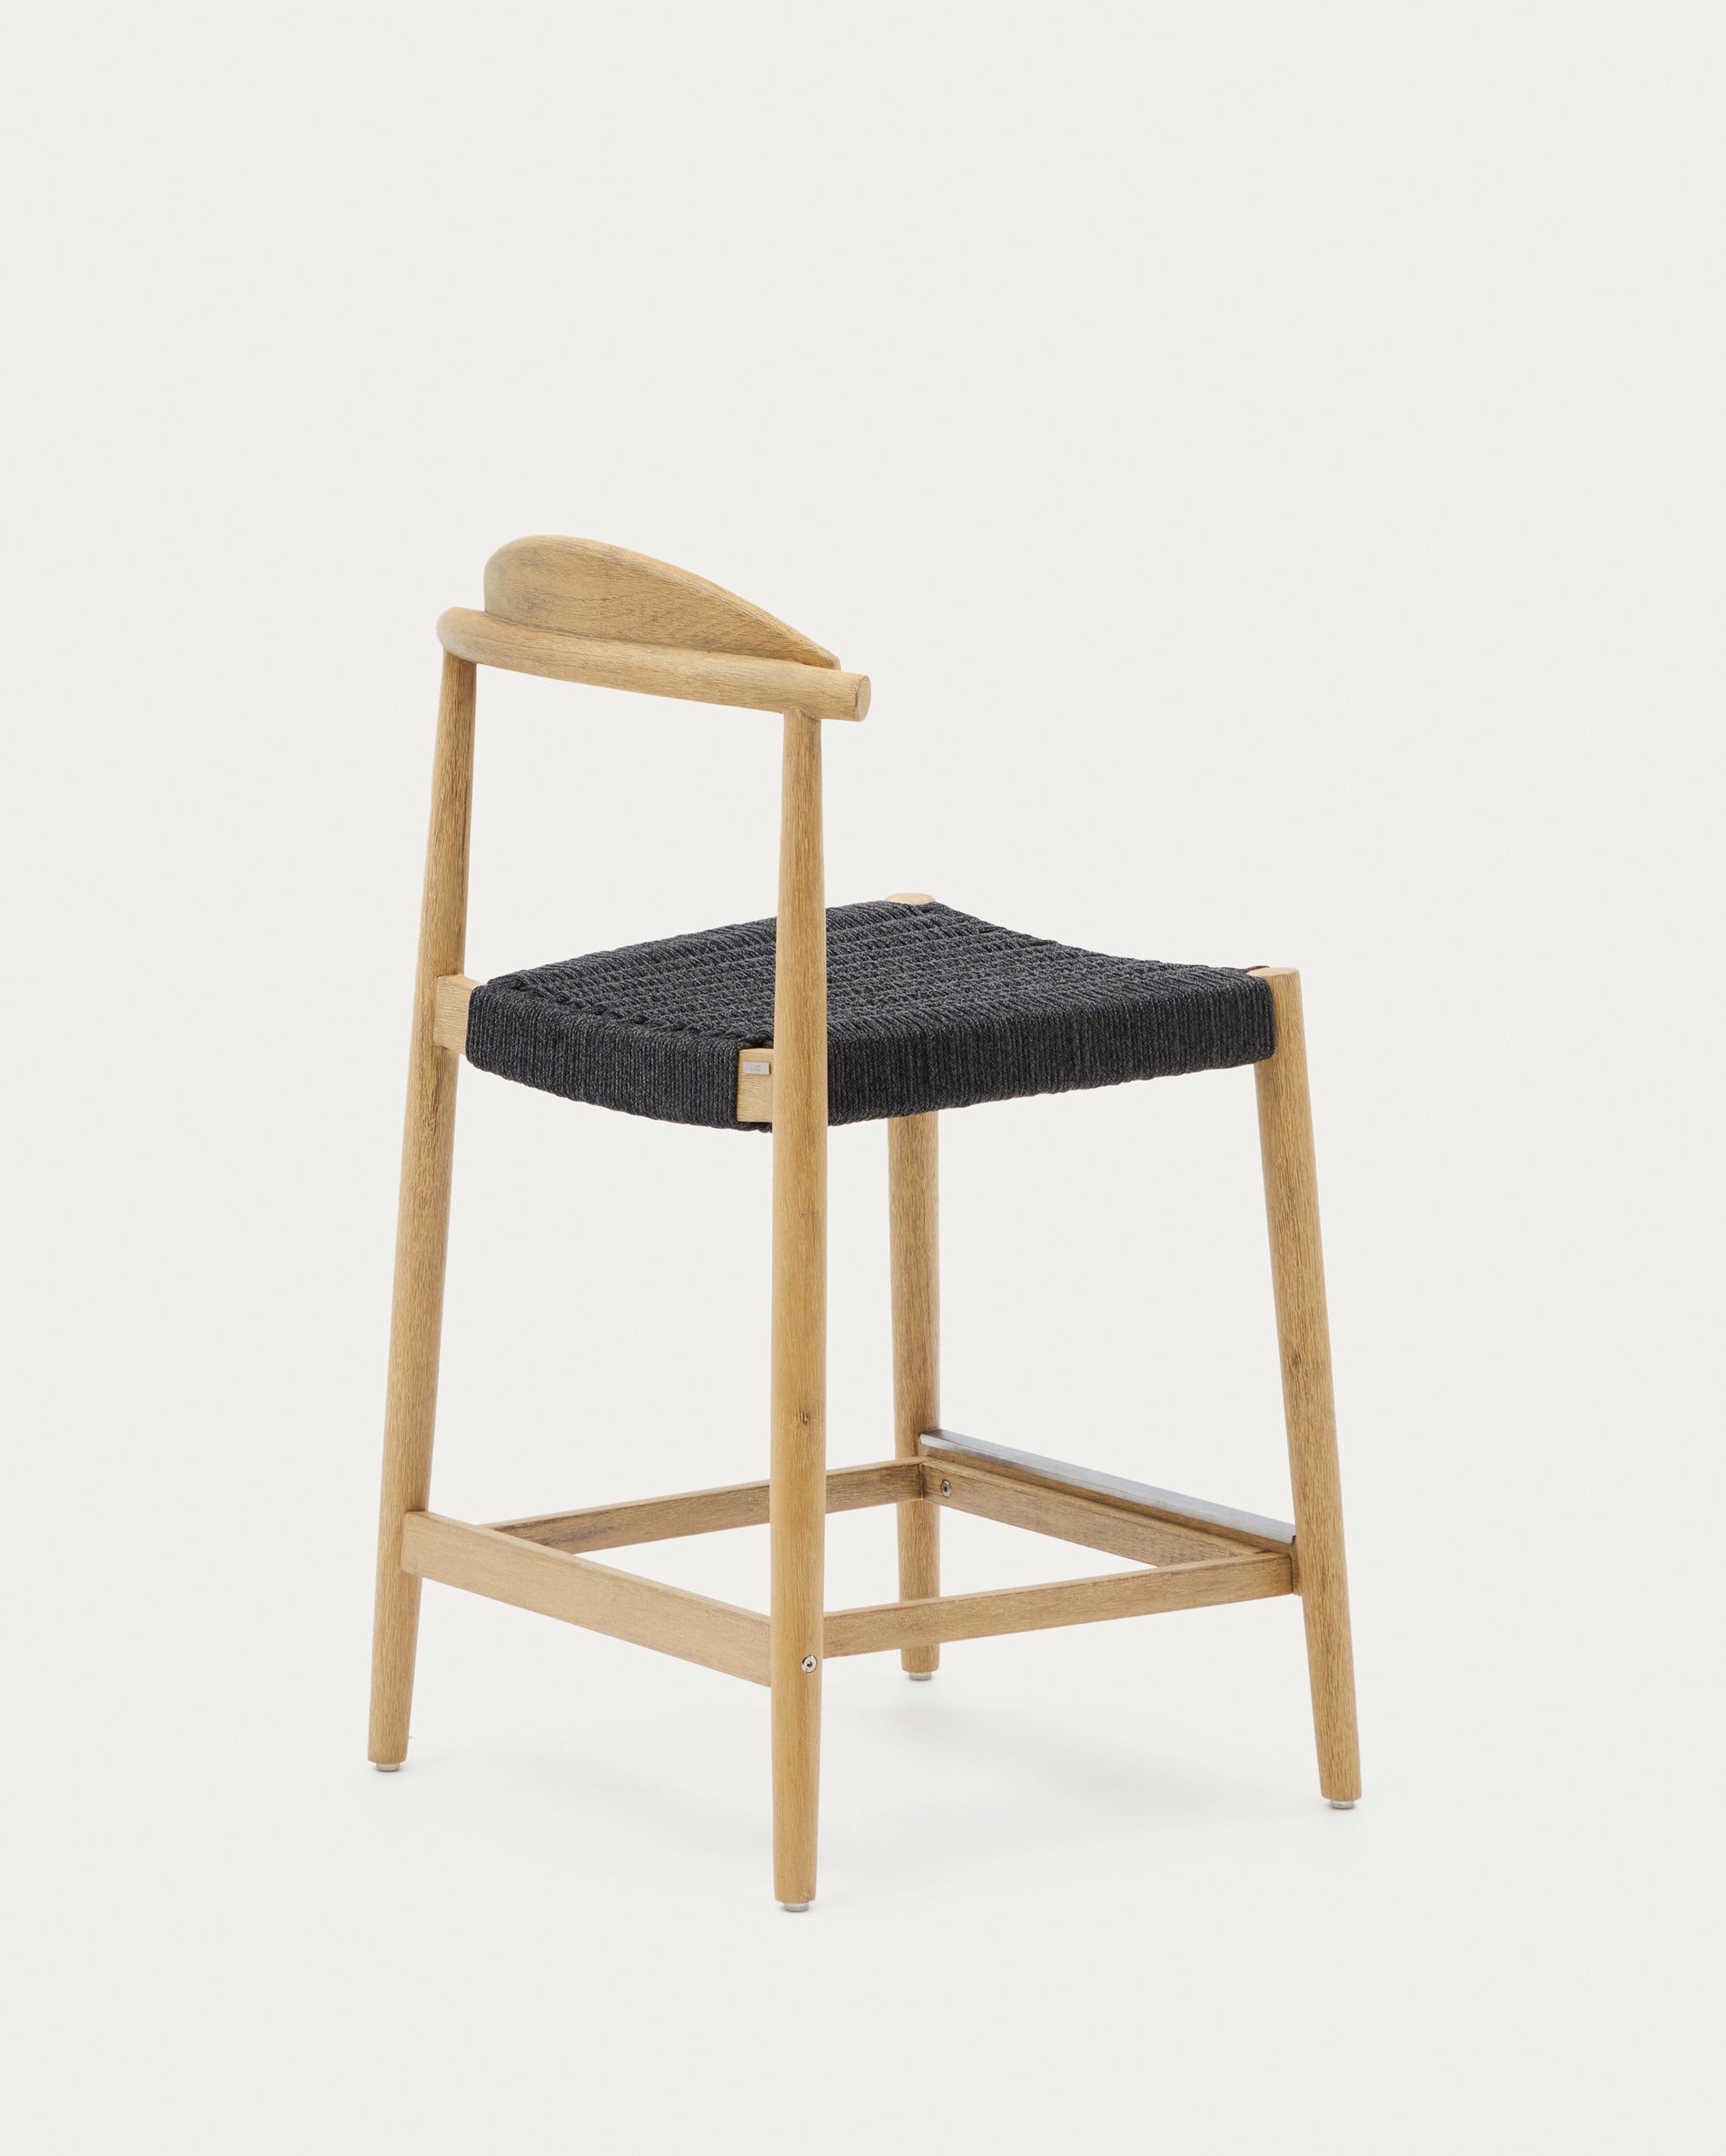 Nina szék, szilárd akácfa anyagból készült, természetes befejezéssel és fekete kötéllel, magassága 62 cm